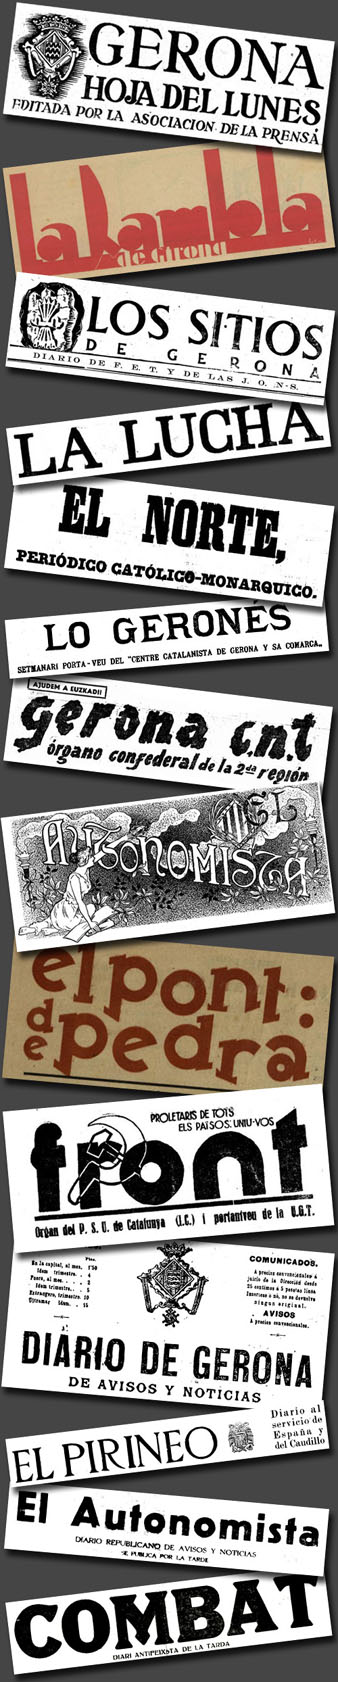 Capçaleres de periòdics publicats a Girona a la primera meitat del segle XX